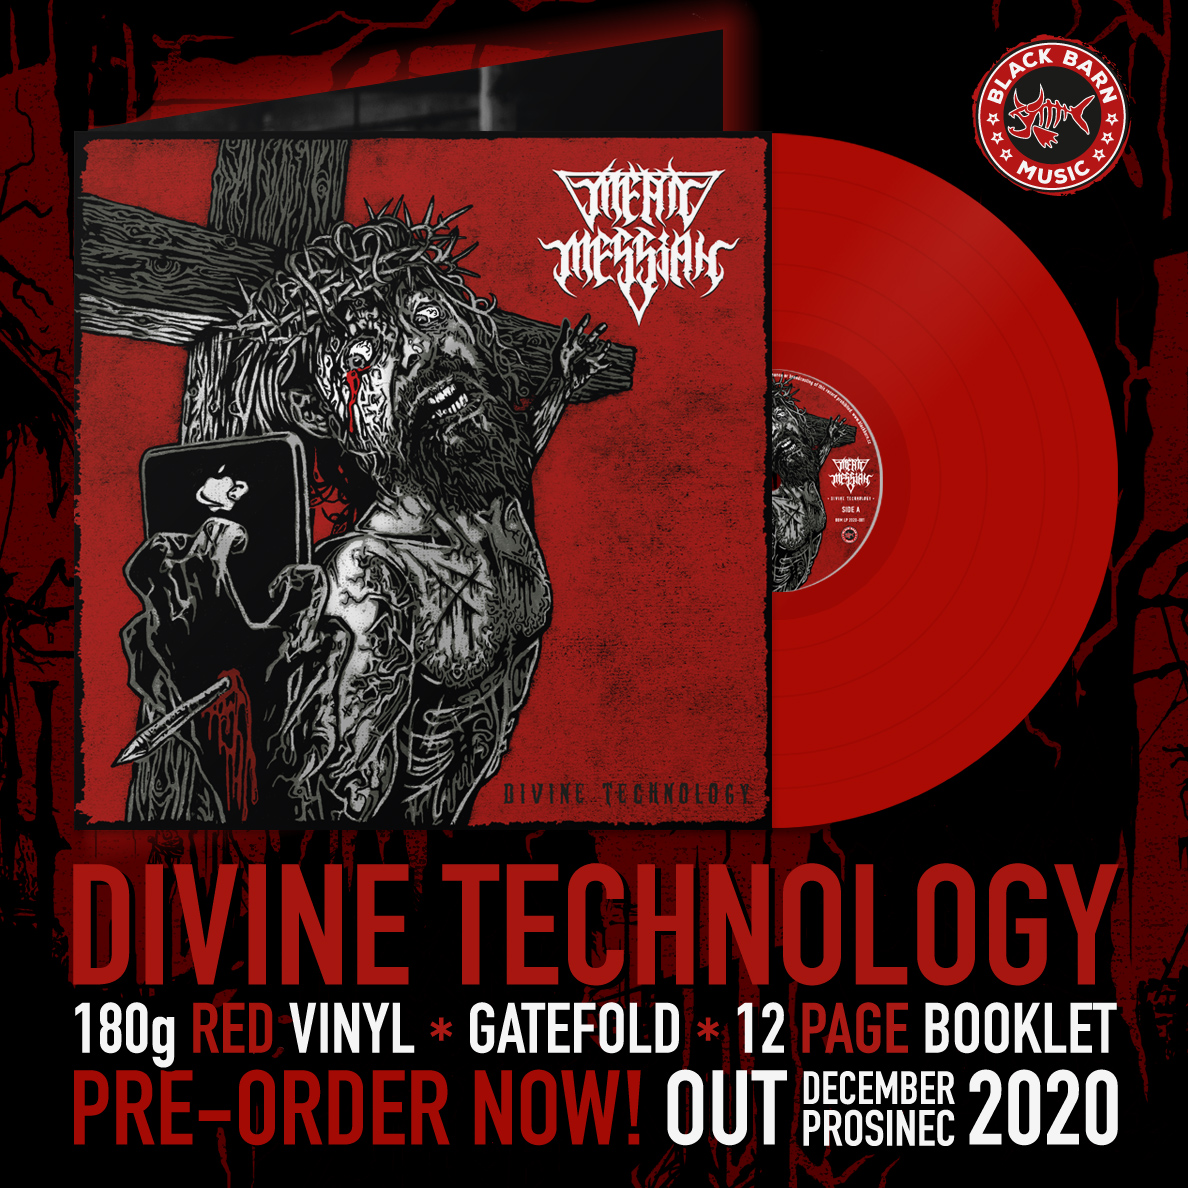 Divine Technology on vinyl